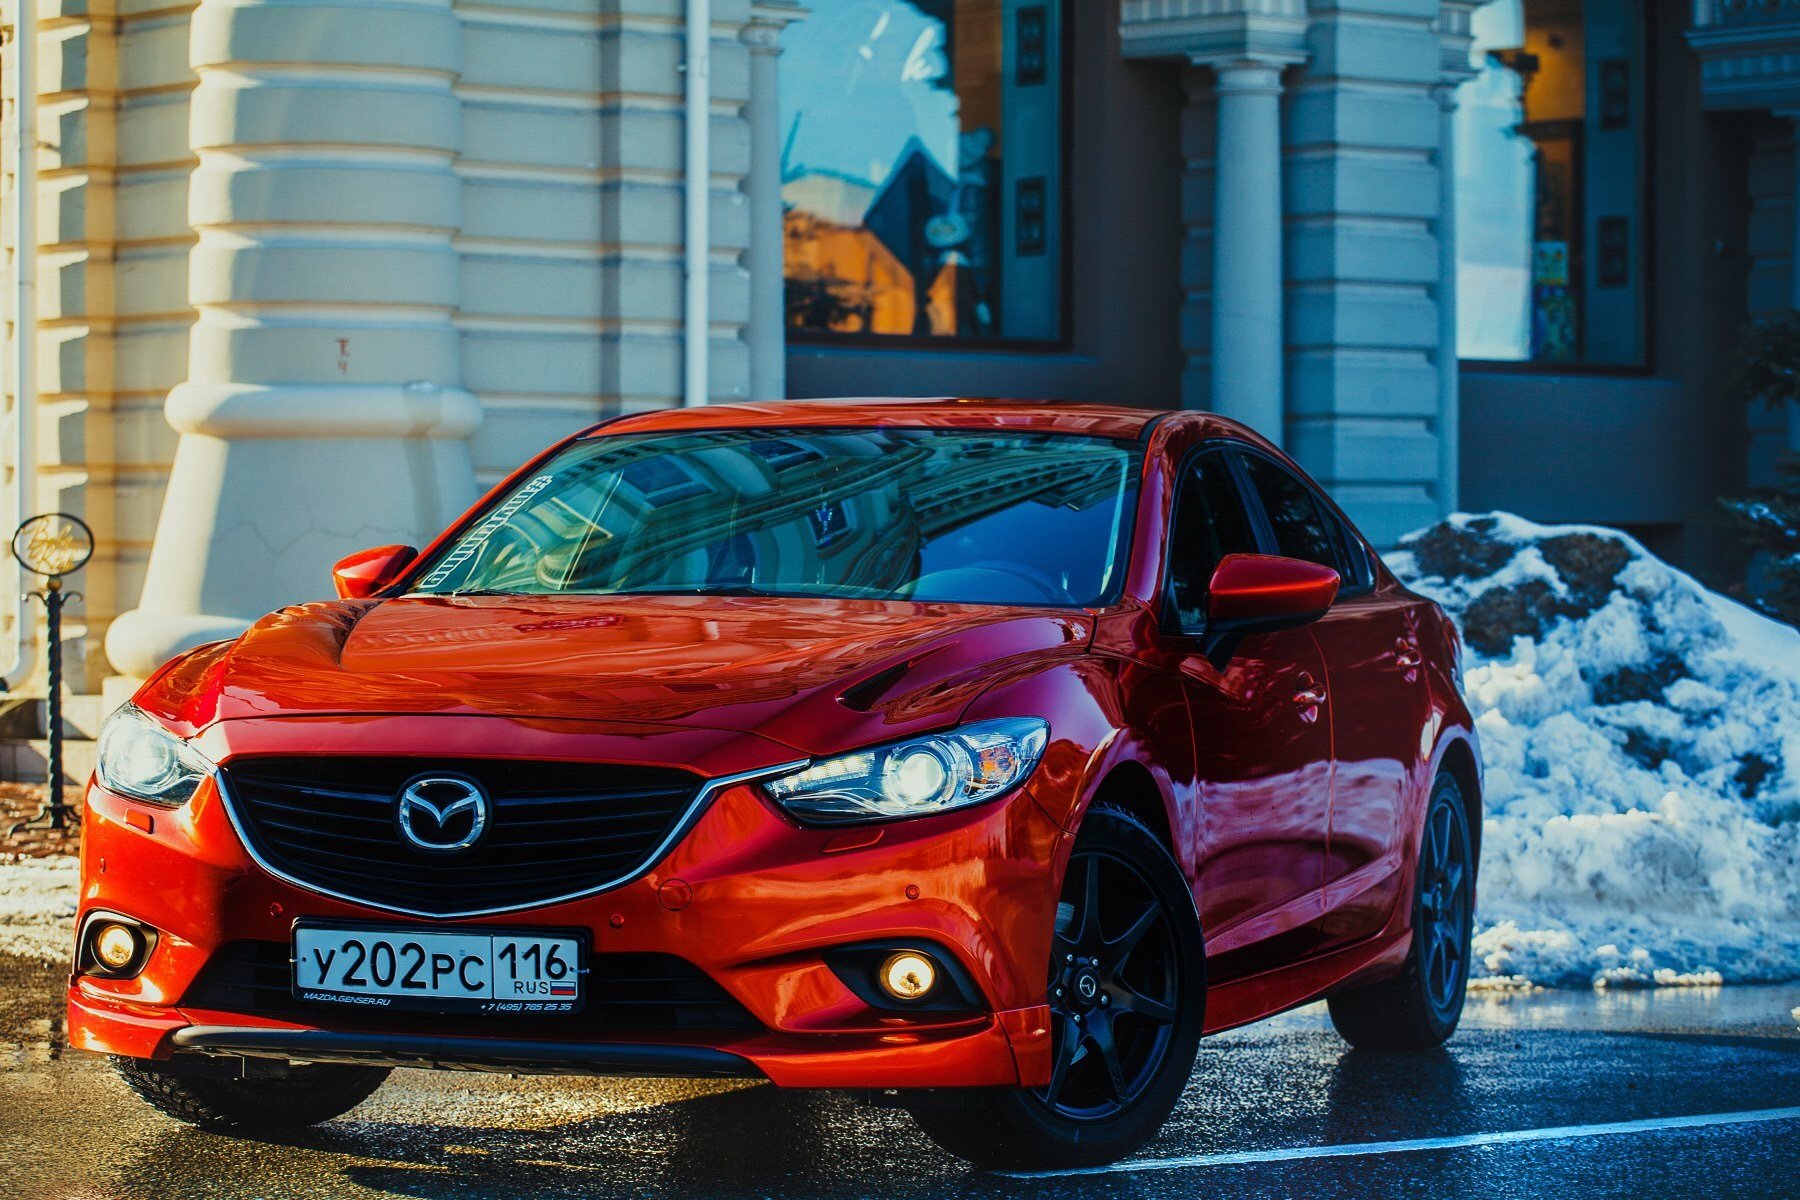 Red mazda. Mazda 6 Red. Мазда 6 красная. Мазда 6 алая. Мазда 6 2016 красная.